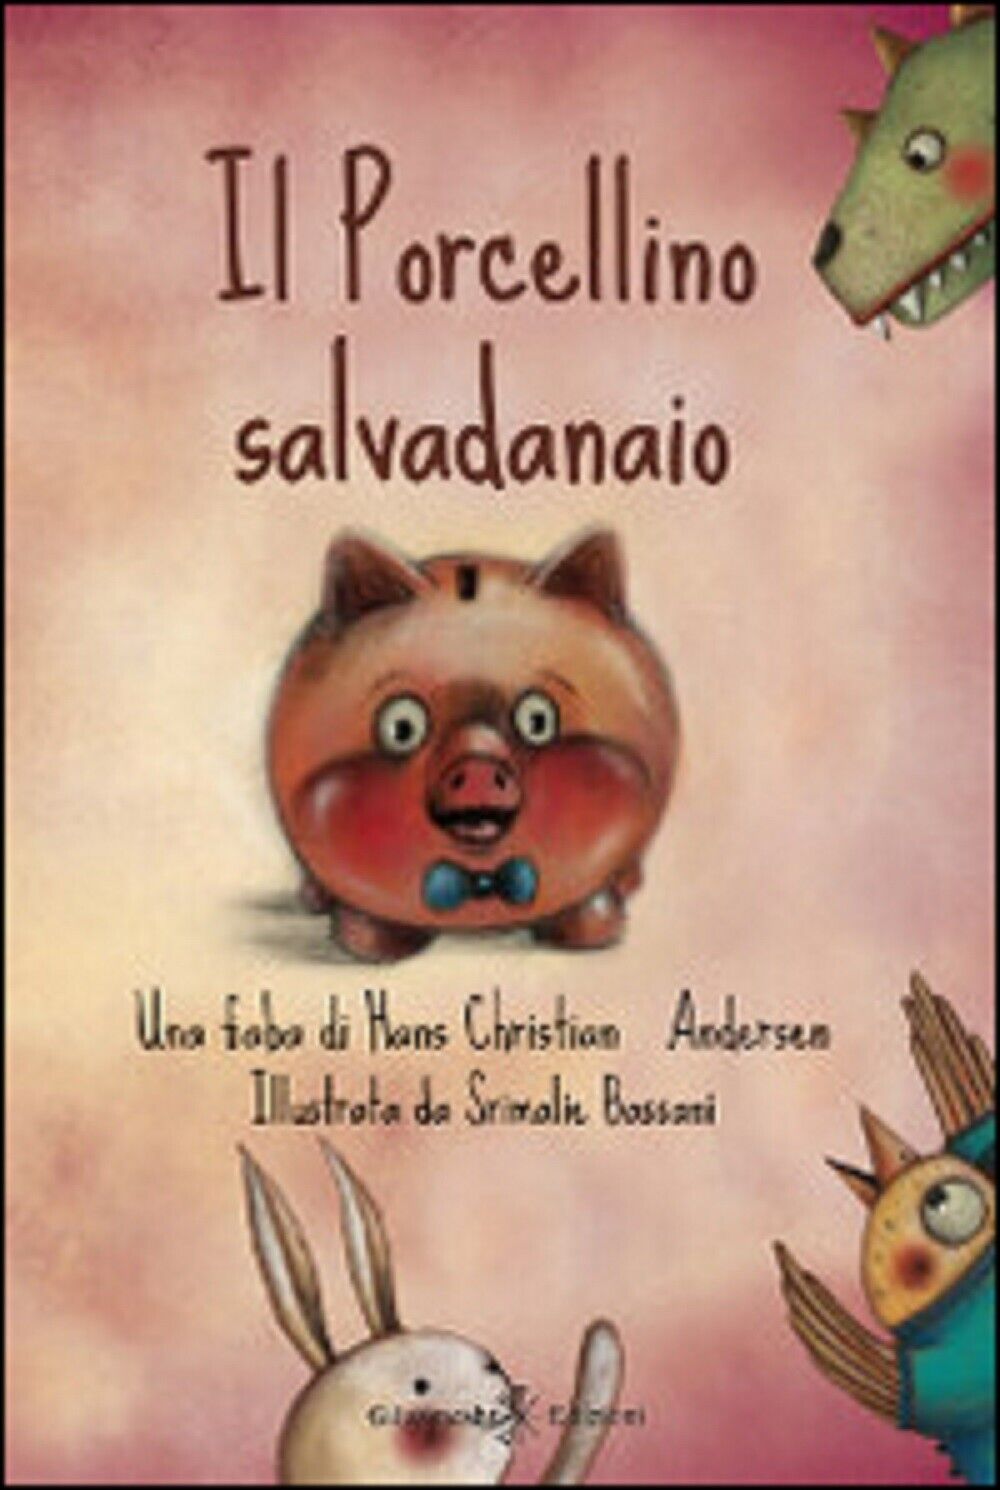   Il porcellino salvadanaio  di Hans Christian Andersen, S. Bassani,  2014,  Gil